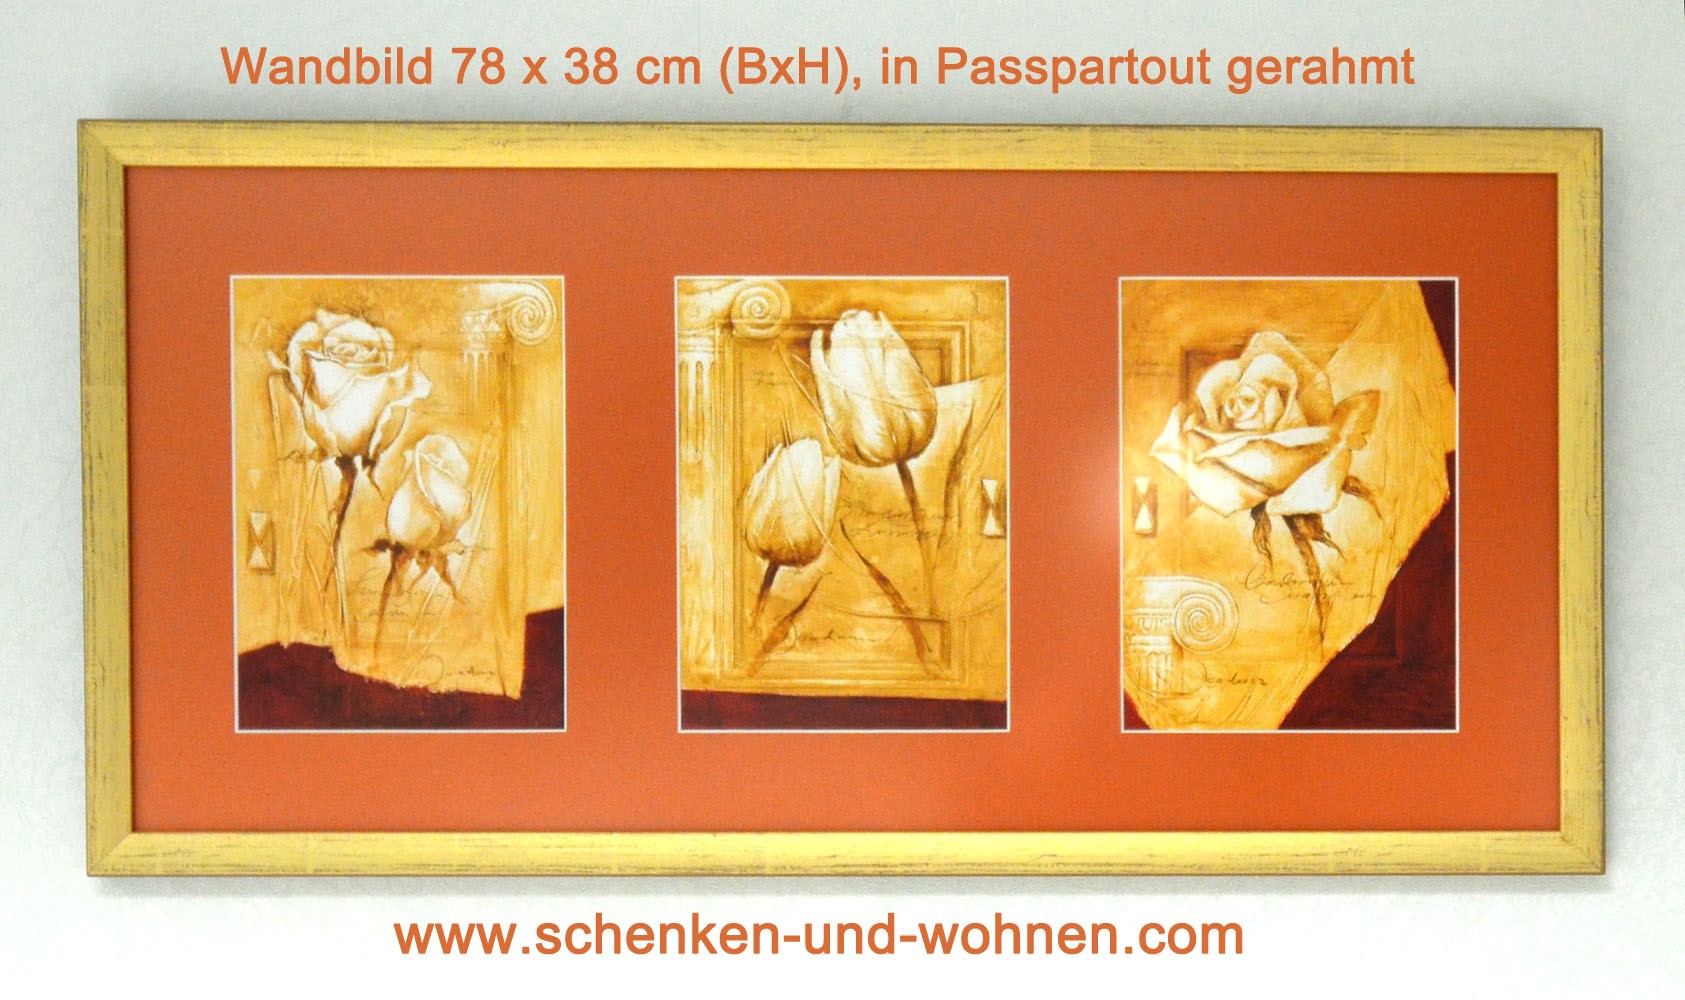 Wandbild 78 x 38 cm (BxH) in Passepartout (3) gerahmt